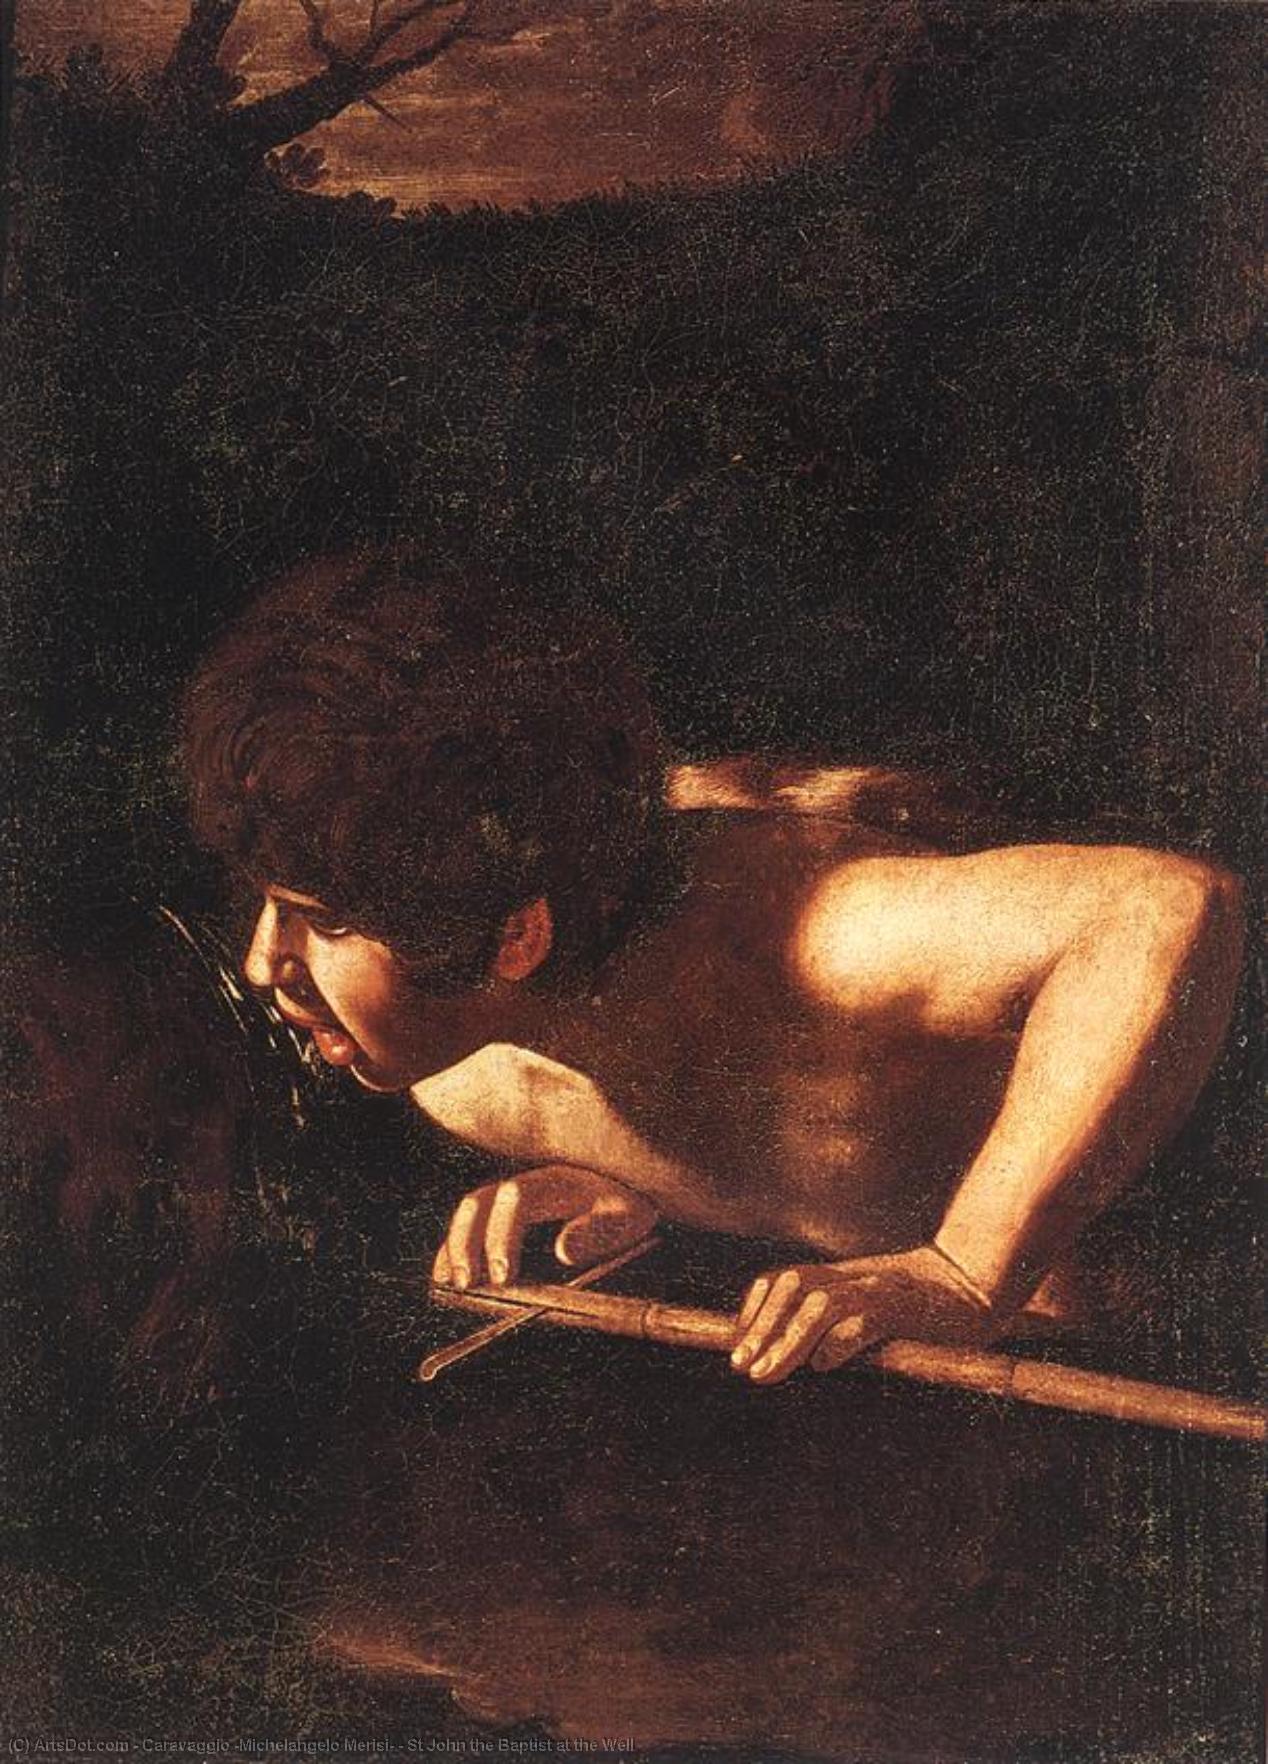 Wikioo.org – L'Encyclopédie des Beaux Arts - Peinture, Oeuvre de Caravaggio (Michelangelo Merisi) - r john le baptiste au  au  bien